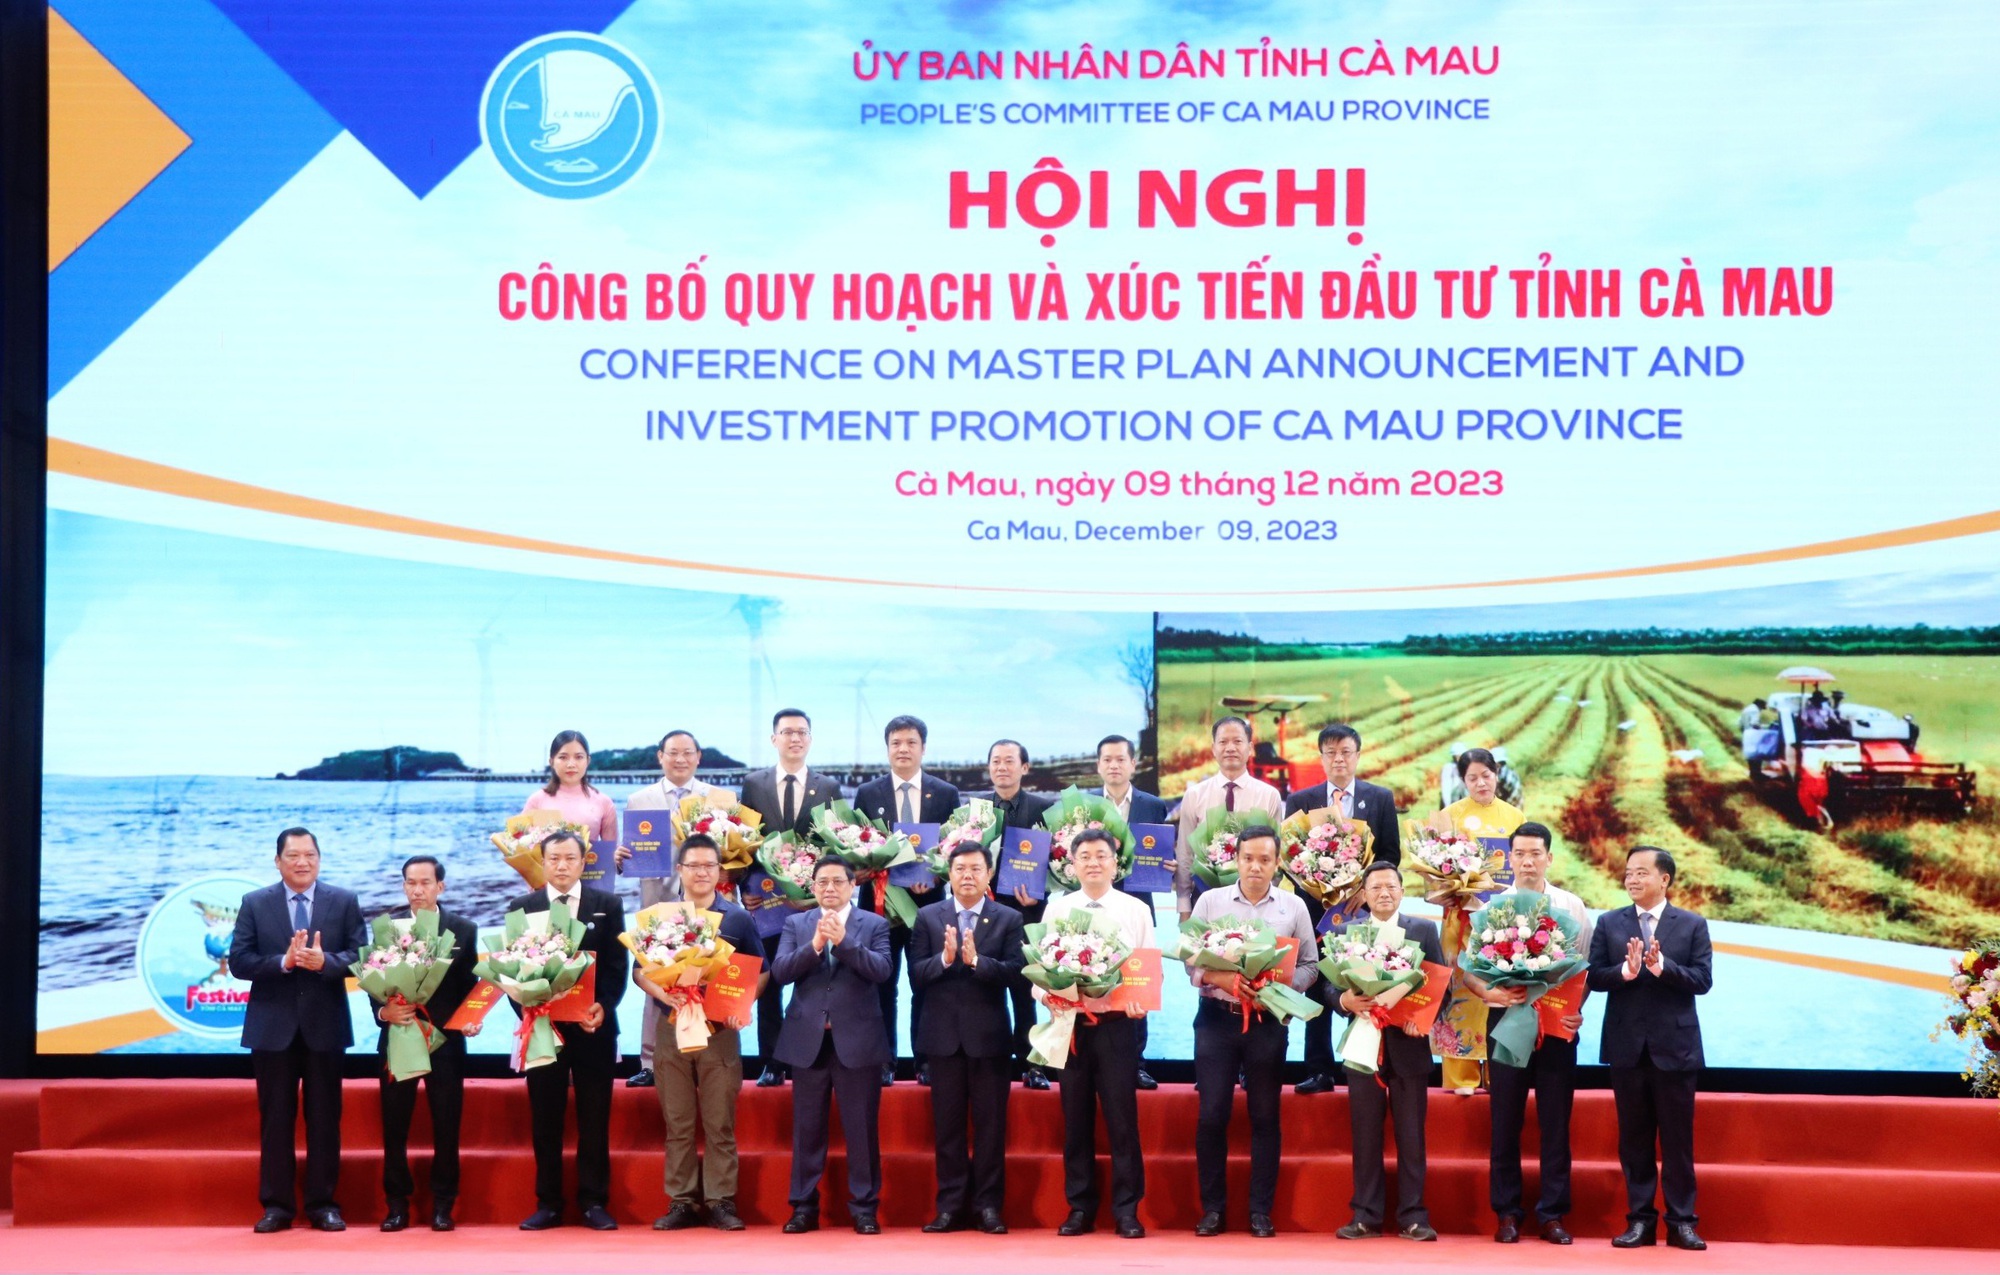 Thủ tướng Chính phủ Phạm Minh Chính dự Hội nghị công bố Quy hoạch và xúc tiến đầu tư tại Cà Mau - Ảnh 3.